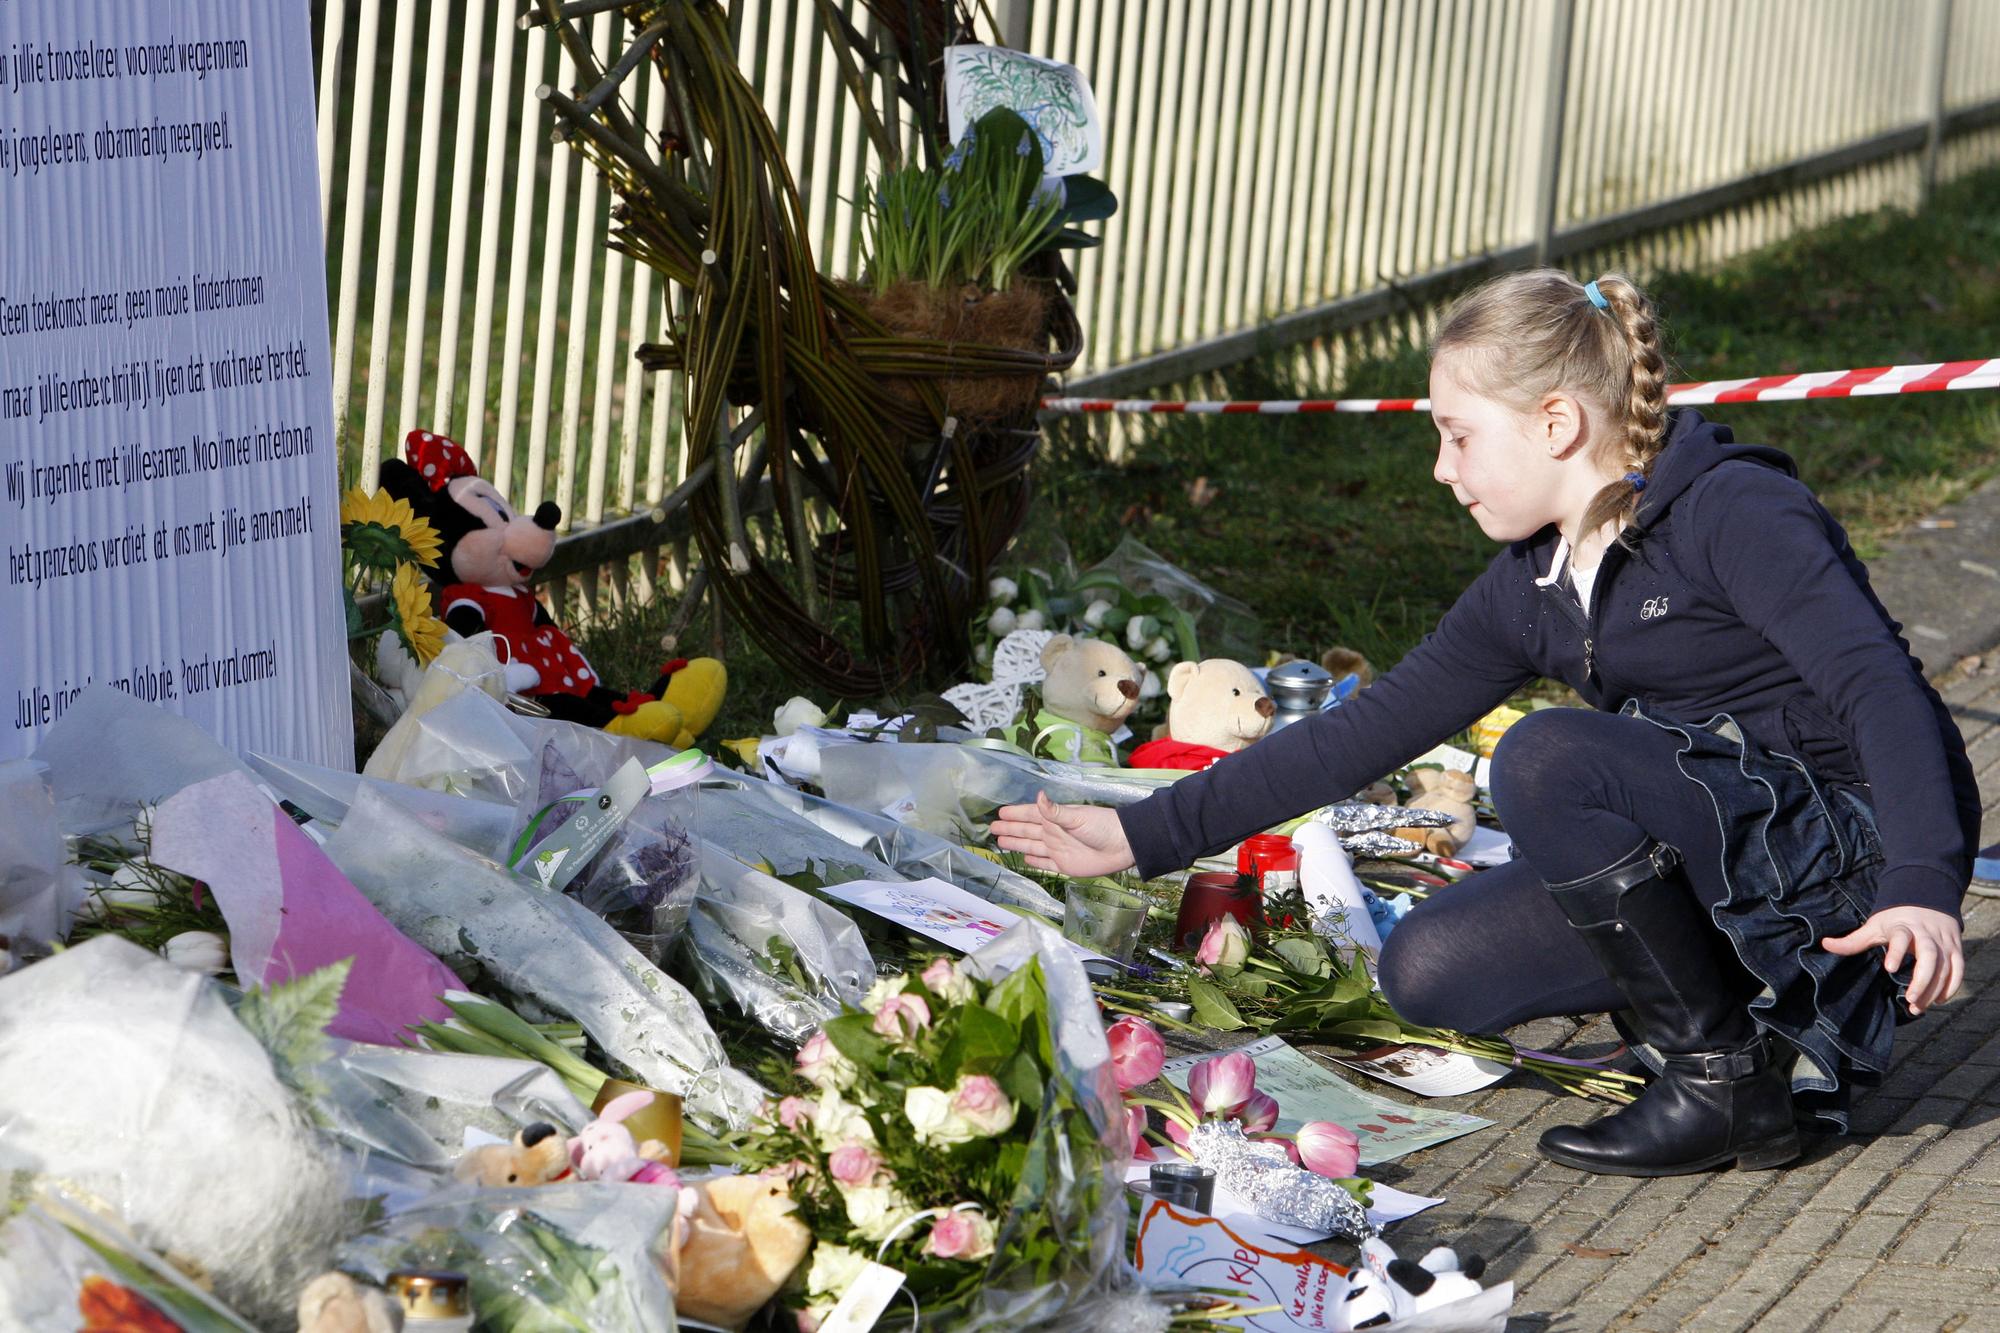 Vendredi, les Belges observeront une minute de silence en hommage aux 28 victimes. [REUTERS - STRINGER Belgium]